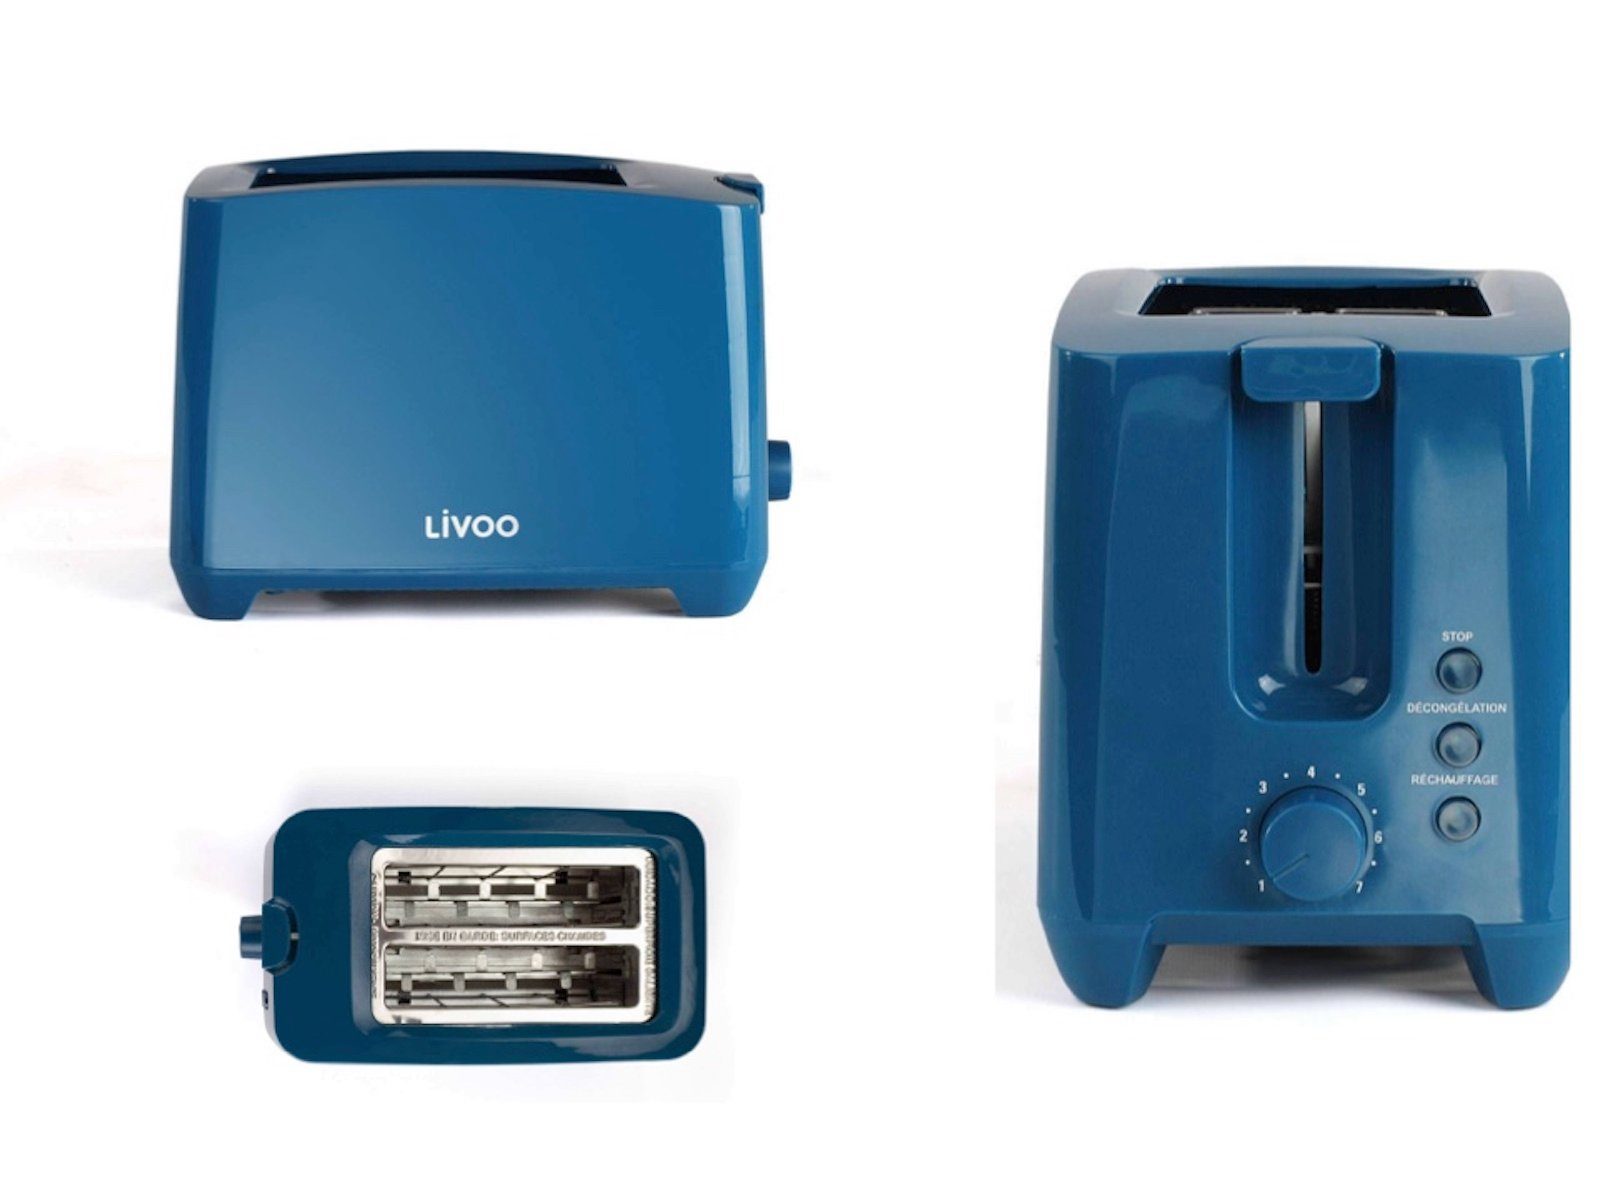 LIVOO Toaster LIVOO Toaster Toastautomat Toastgerät 2-Schlitz-Toaster DOD162B blau